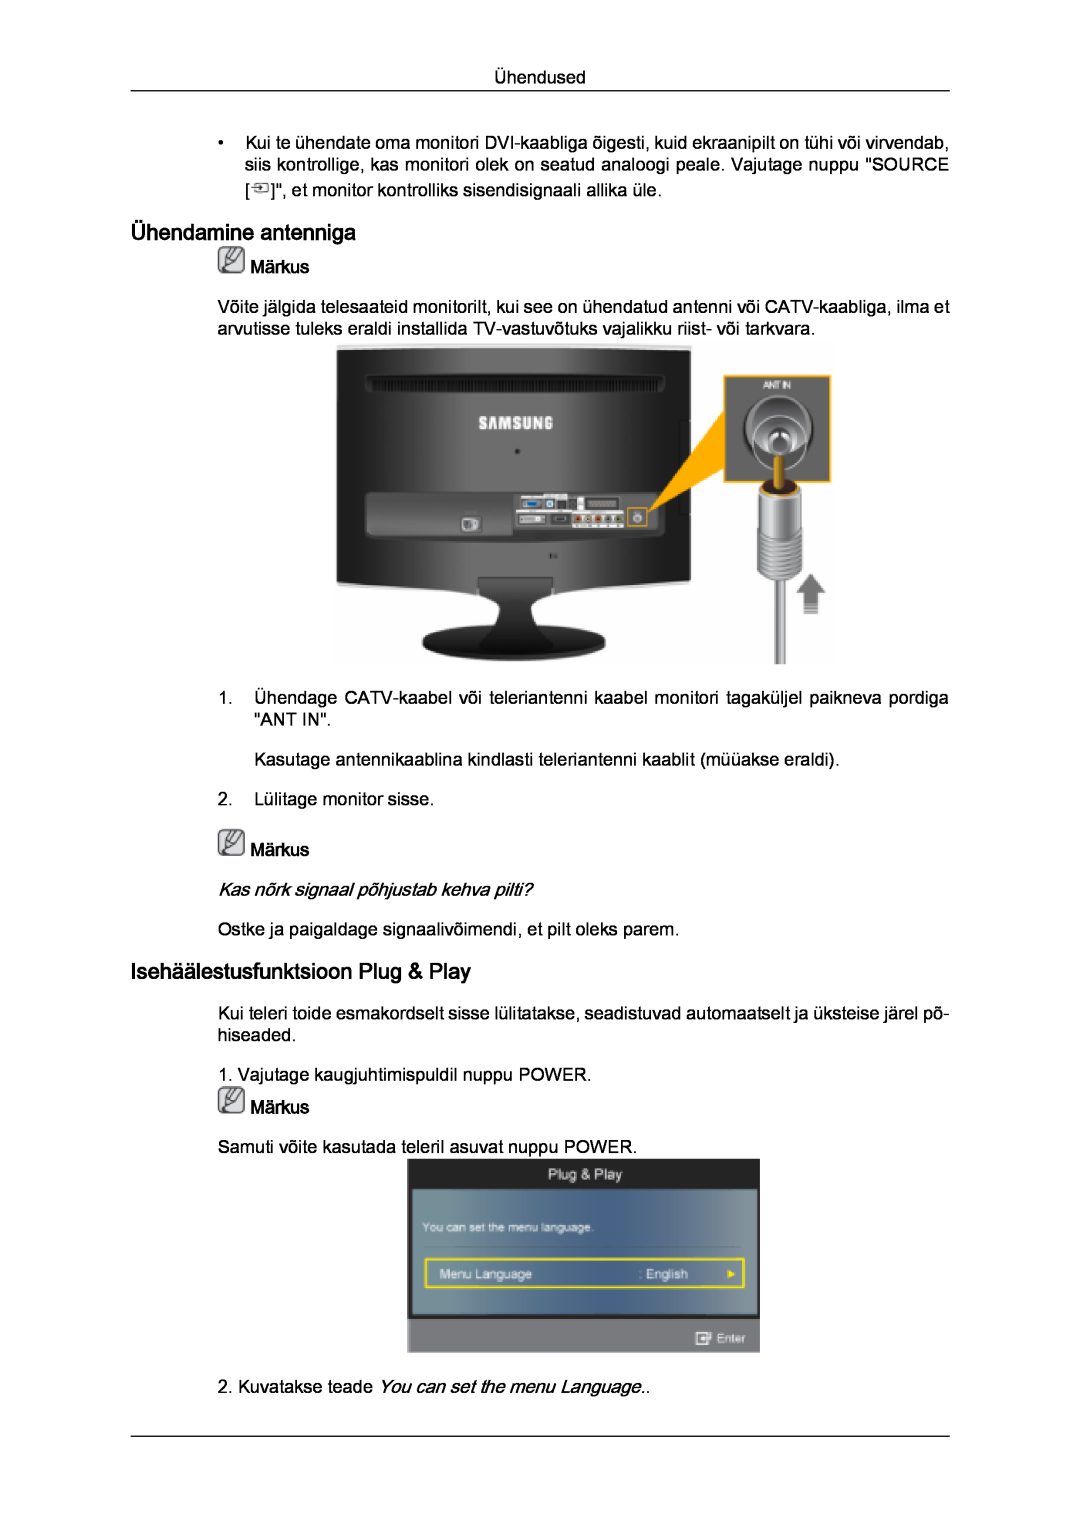 Samsung LS20TDVSUV/EN Ühendamine antenniga, Isehäälestusfunktsioon Plug & Play, Kas nõrk signaal põhjustab kehva pilti? 